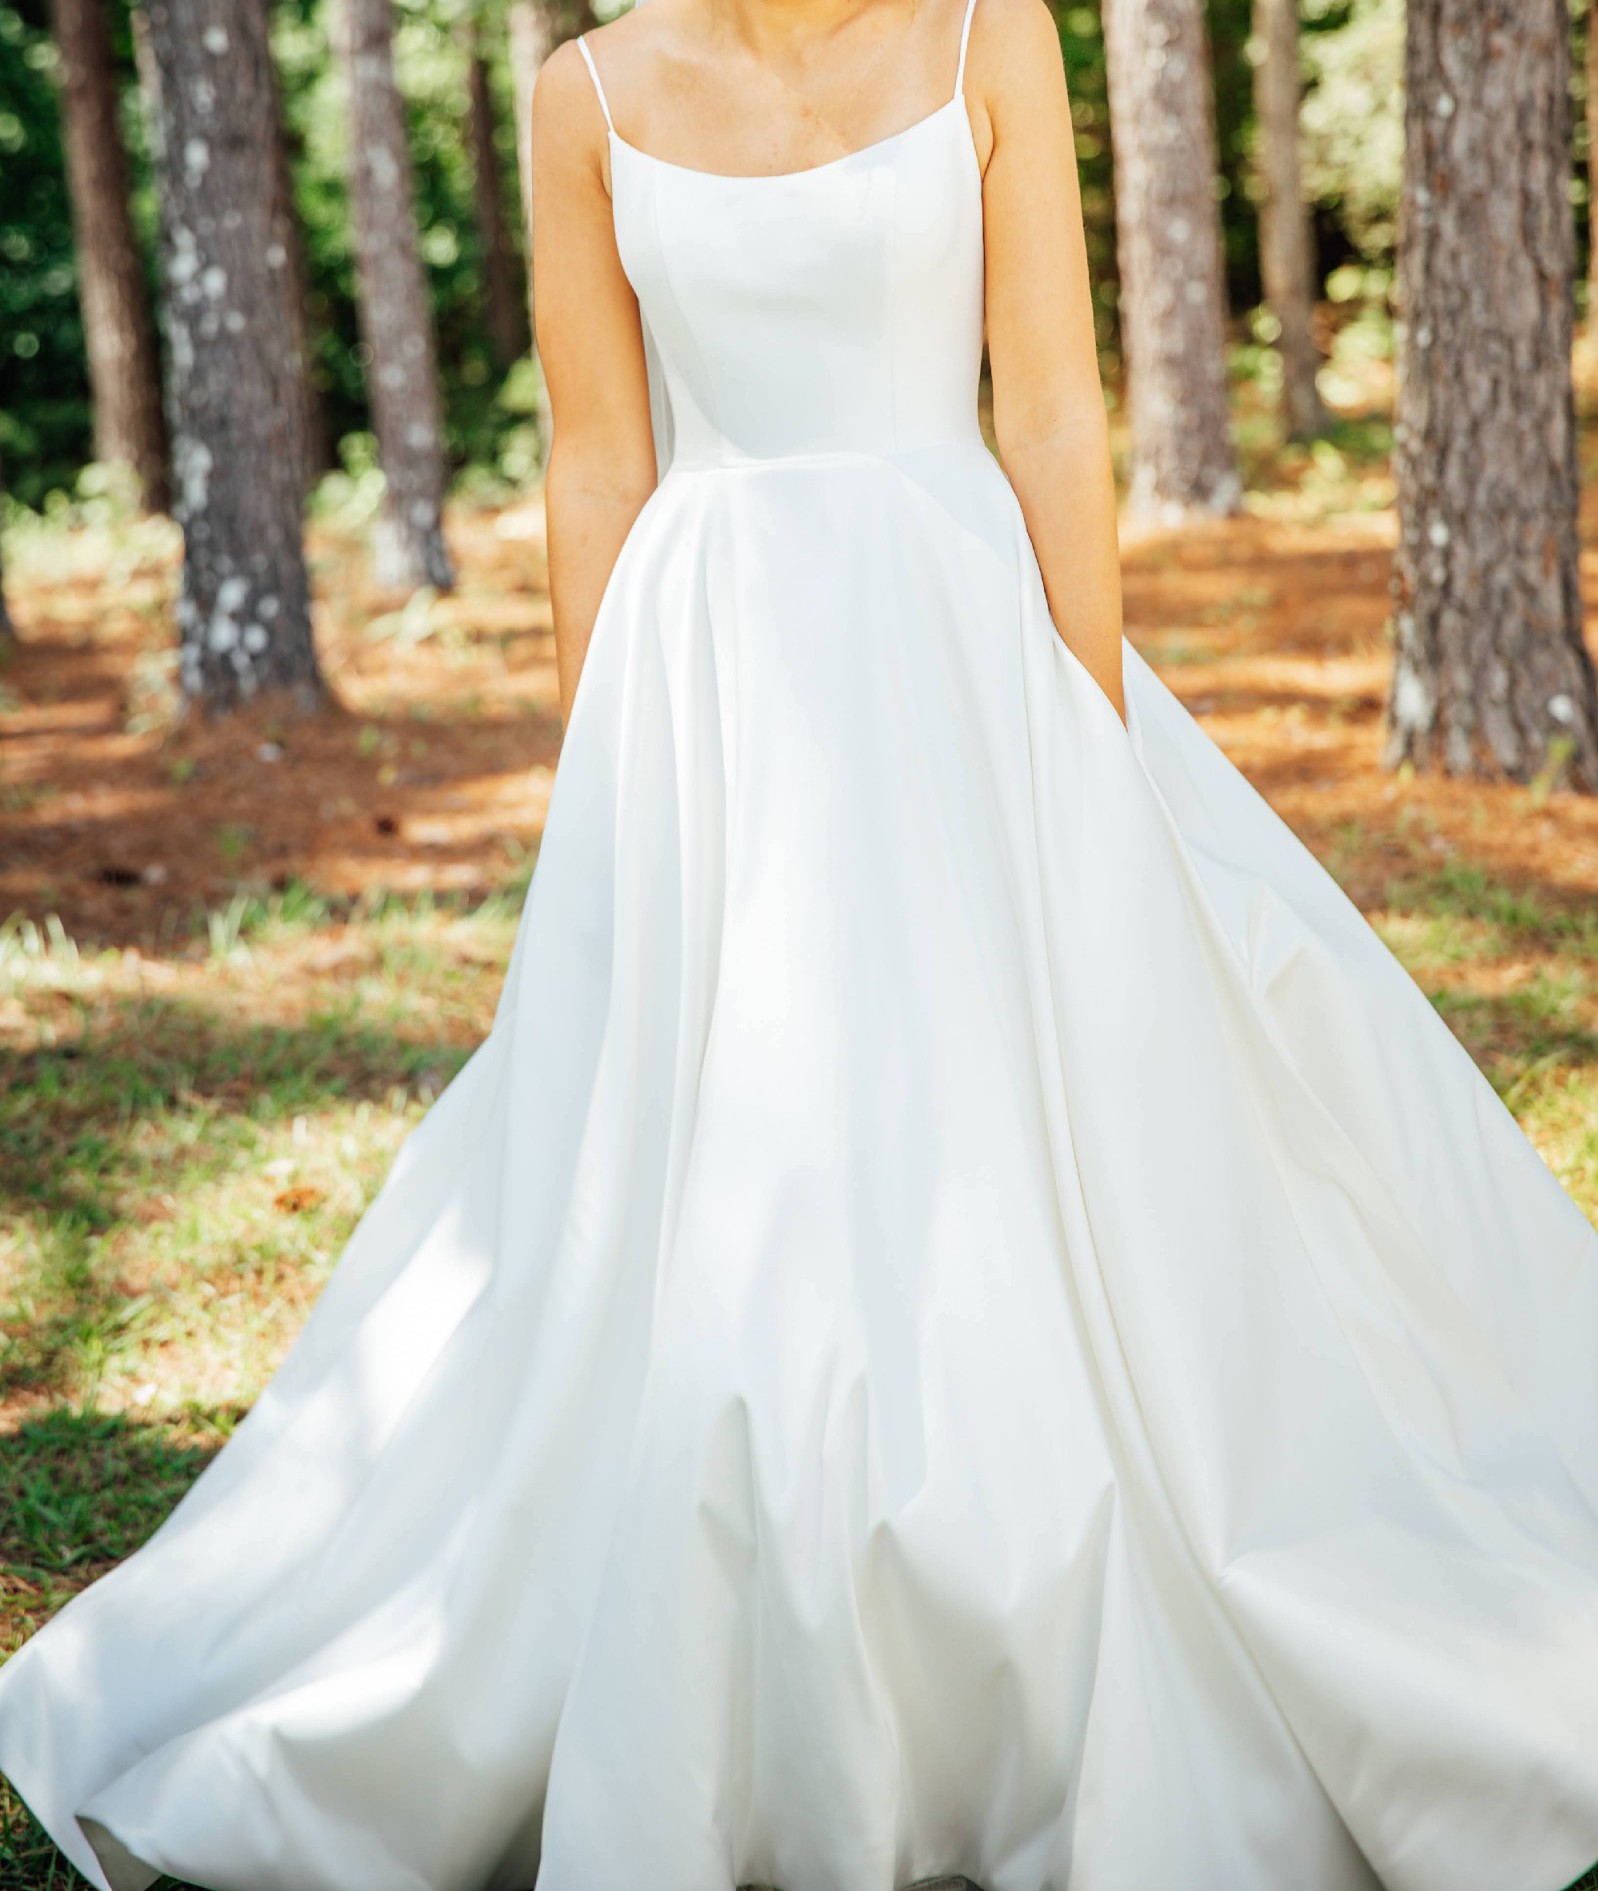 19+ Allure Bridal Wedding Dress